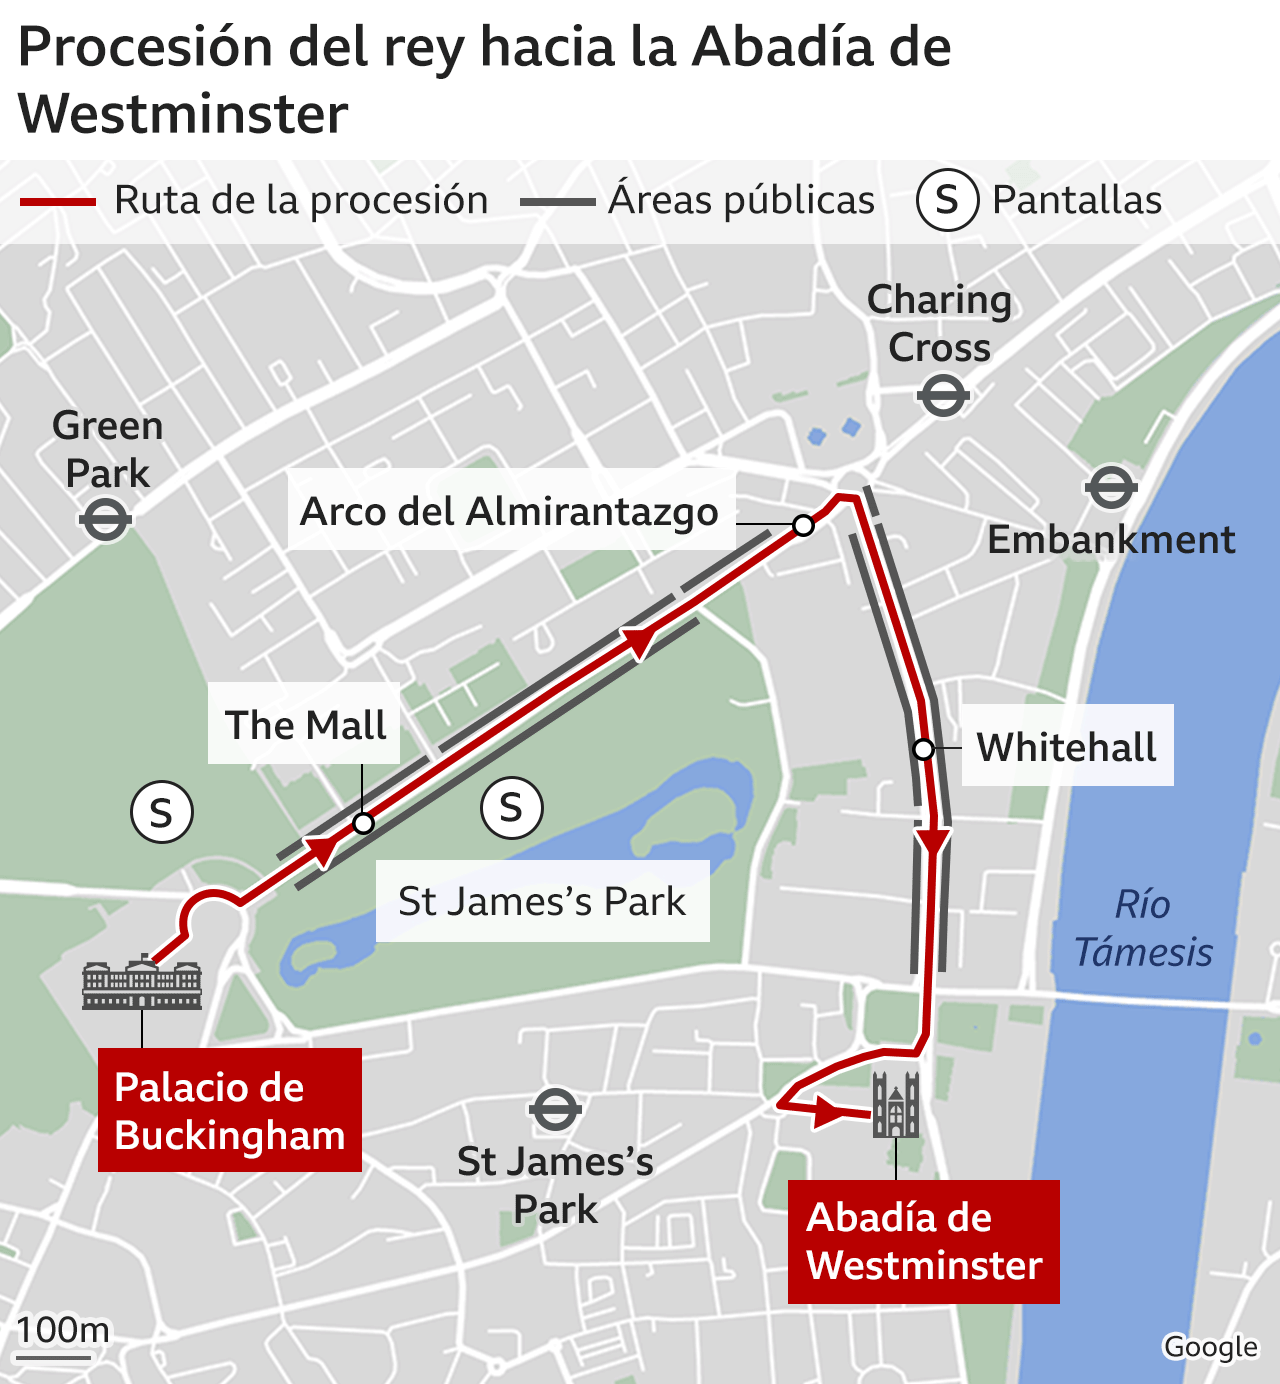 Procesión del rey Carlos III hacia la Abadía de Westminster.